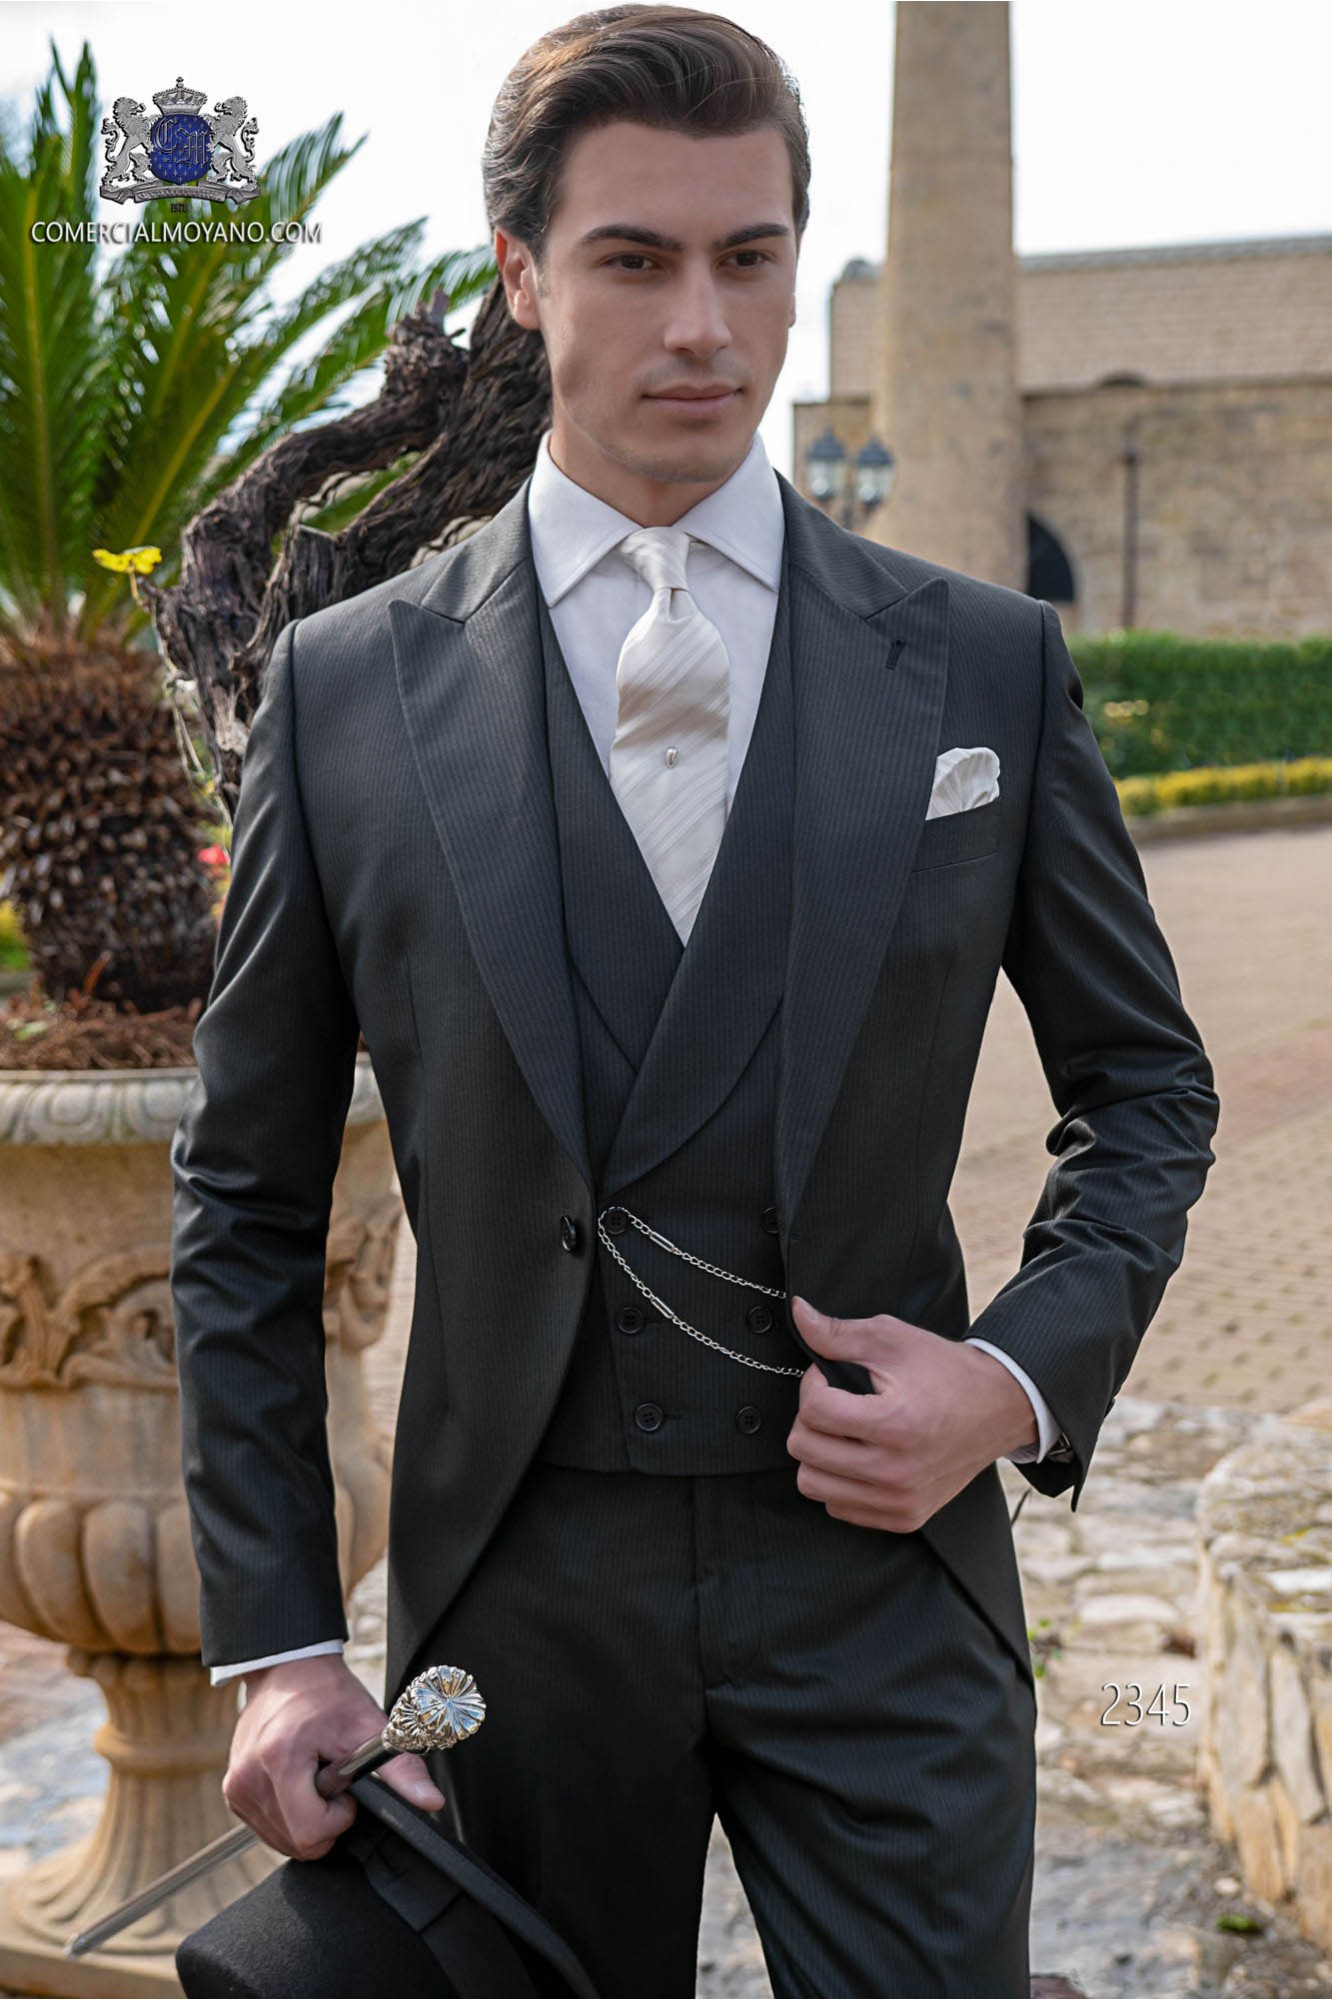 Chaqué negro de sastrería italiana con elegante corte “Slim”. Tejido “mil rayas” modelo: 2345 Mario Moyano colección Gentleman